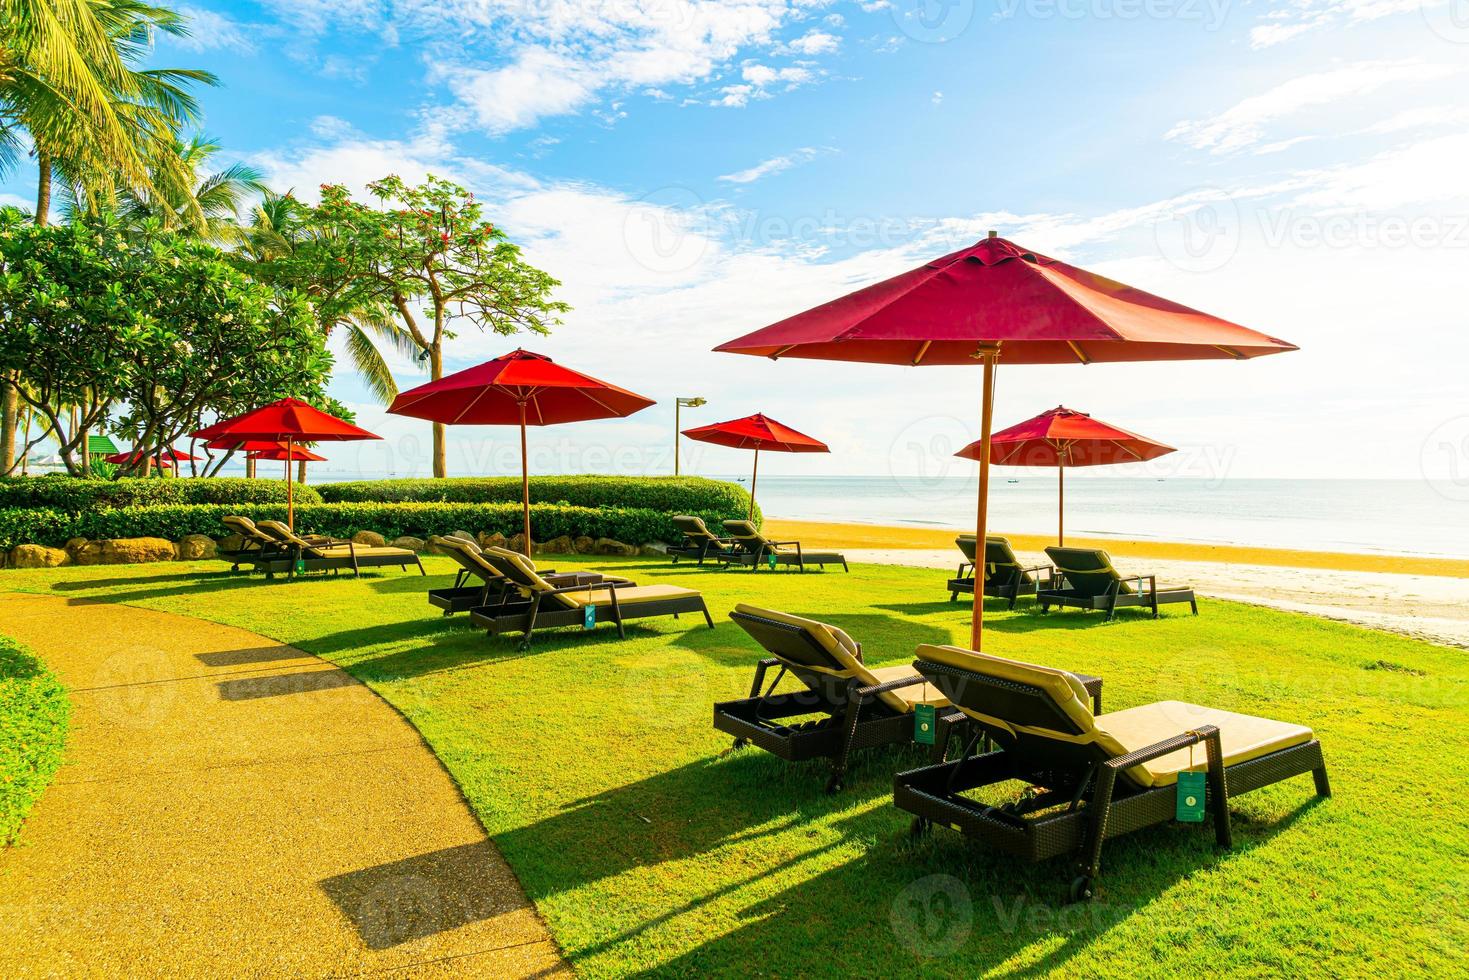 rode paraplu en strandstoel met zee strand achtergrond en blauwe lucht en zonlicht foto